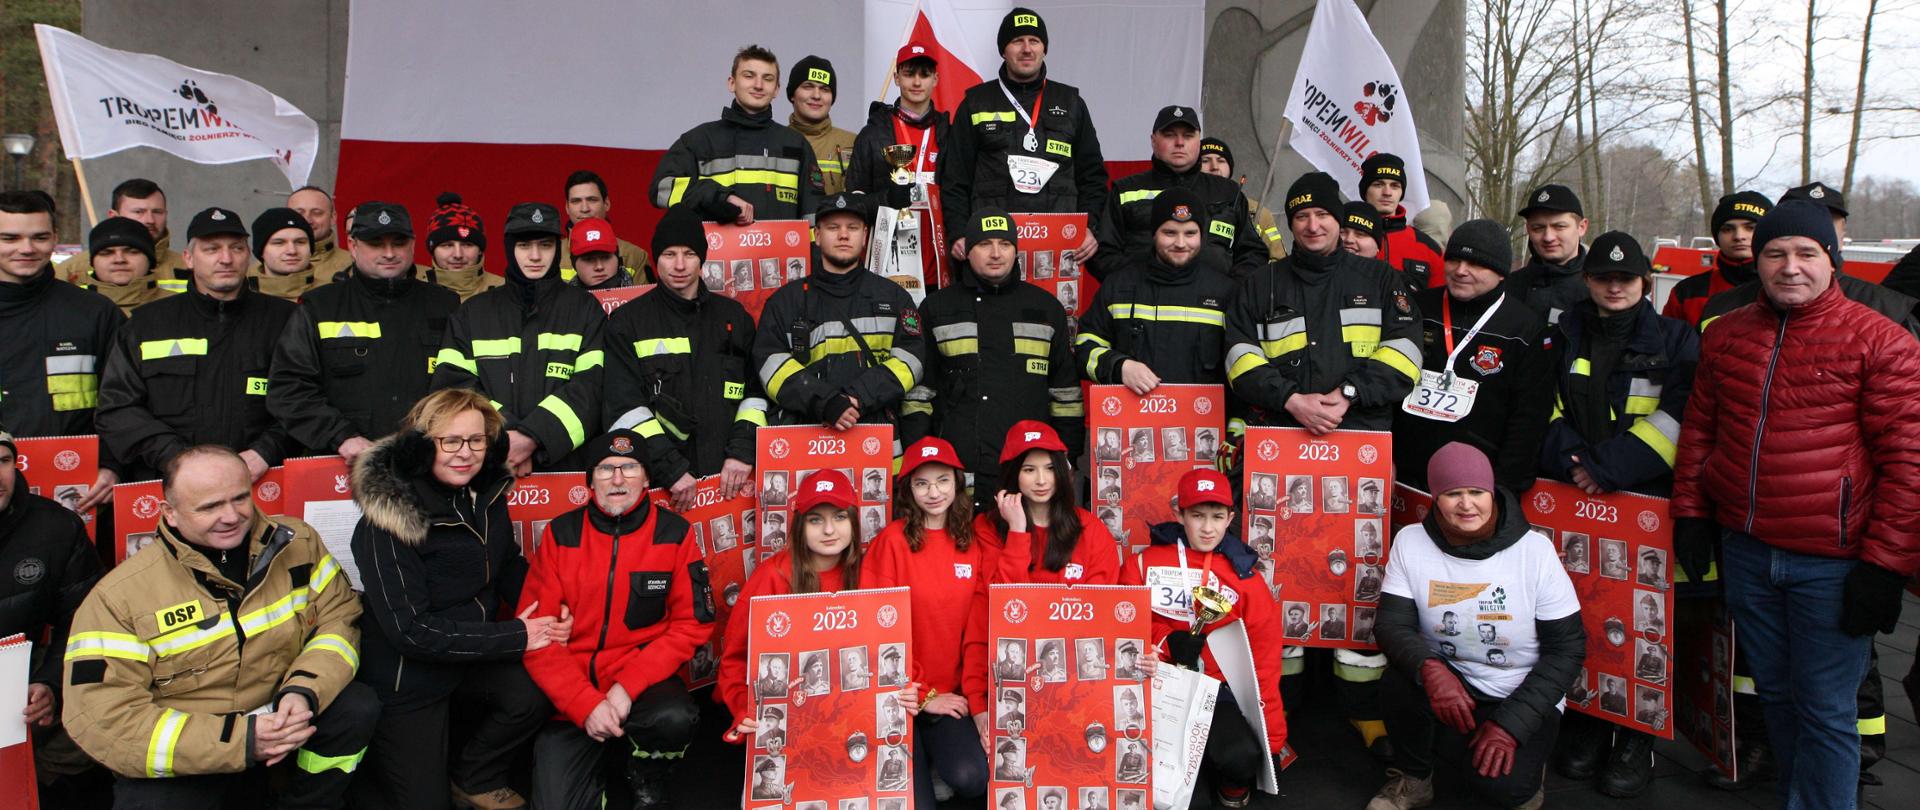 Laureaci biegu oraz osoby towarzyszące (młodzież orz dorośli w mundurach strażackich) w towarzystwie europosłanki Jadwigi Wiśniewskiej